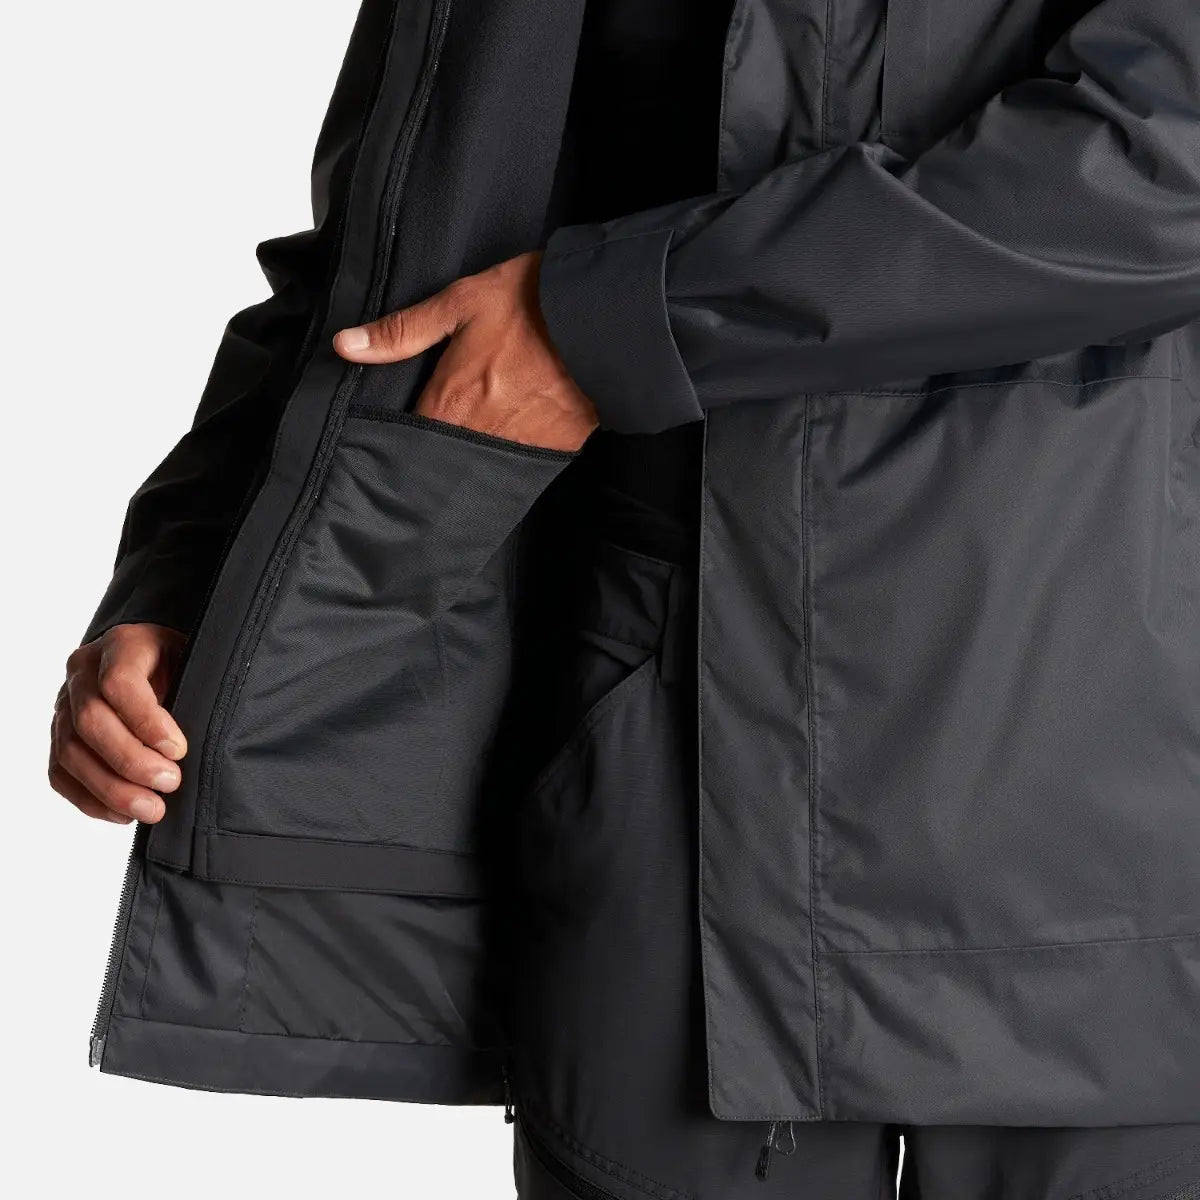 Casaca Hombre Smart Protect Fusion -3 Jacket Negro